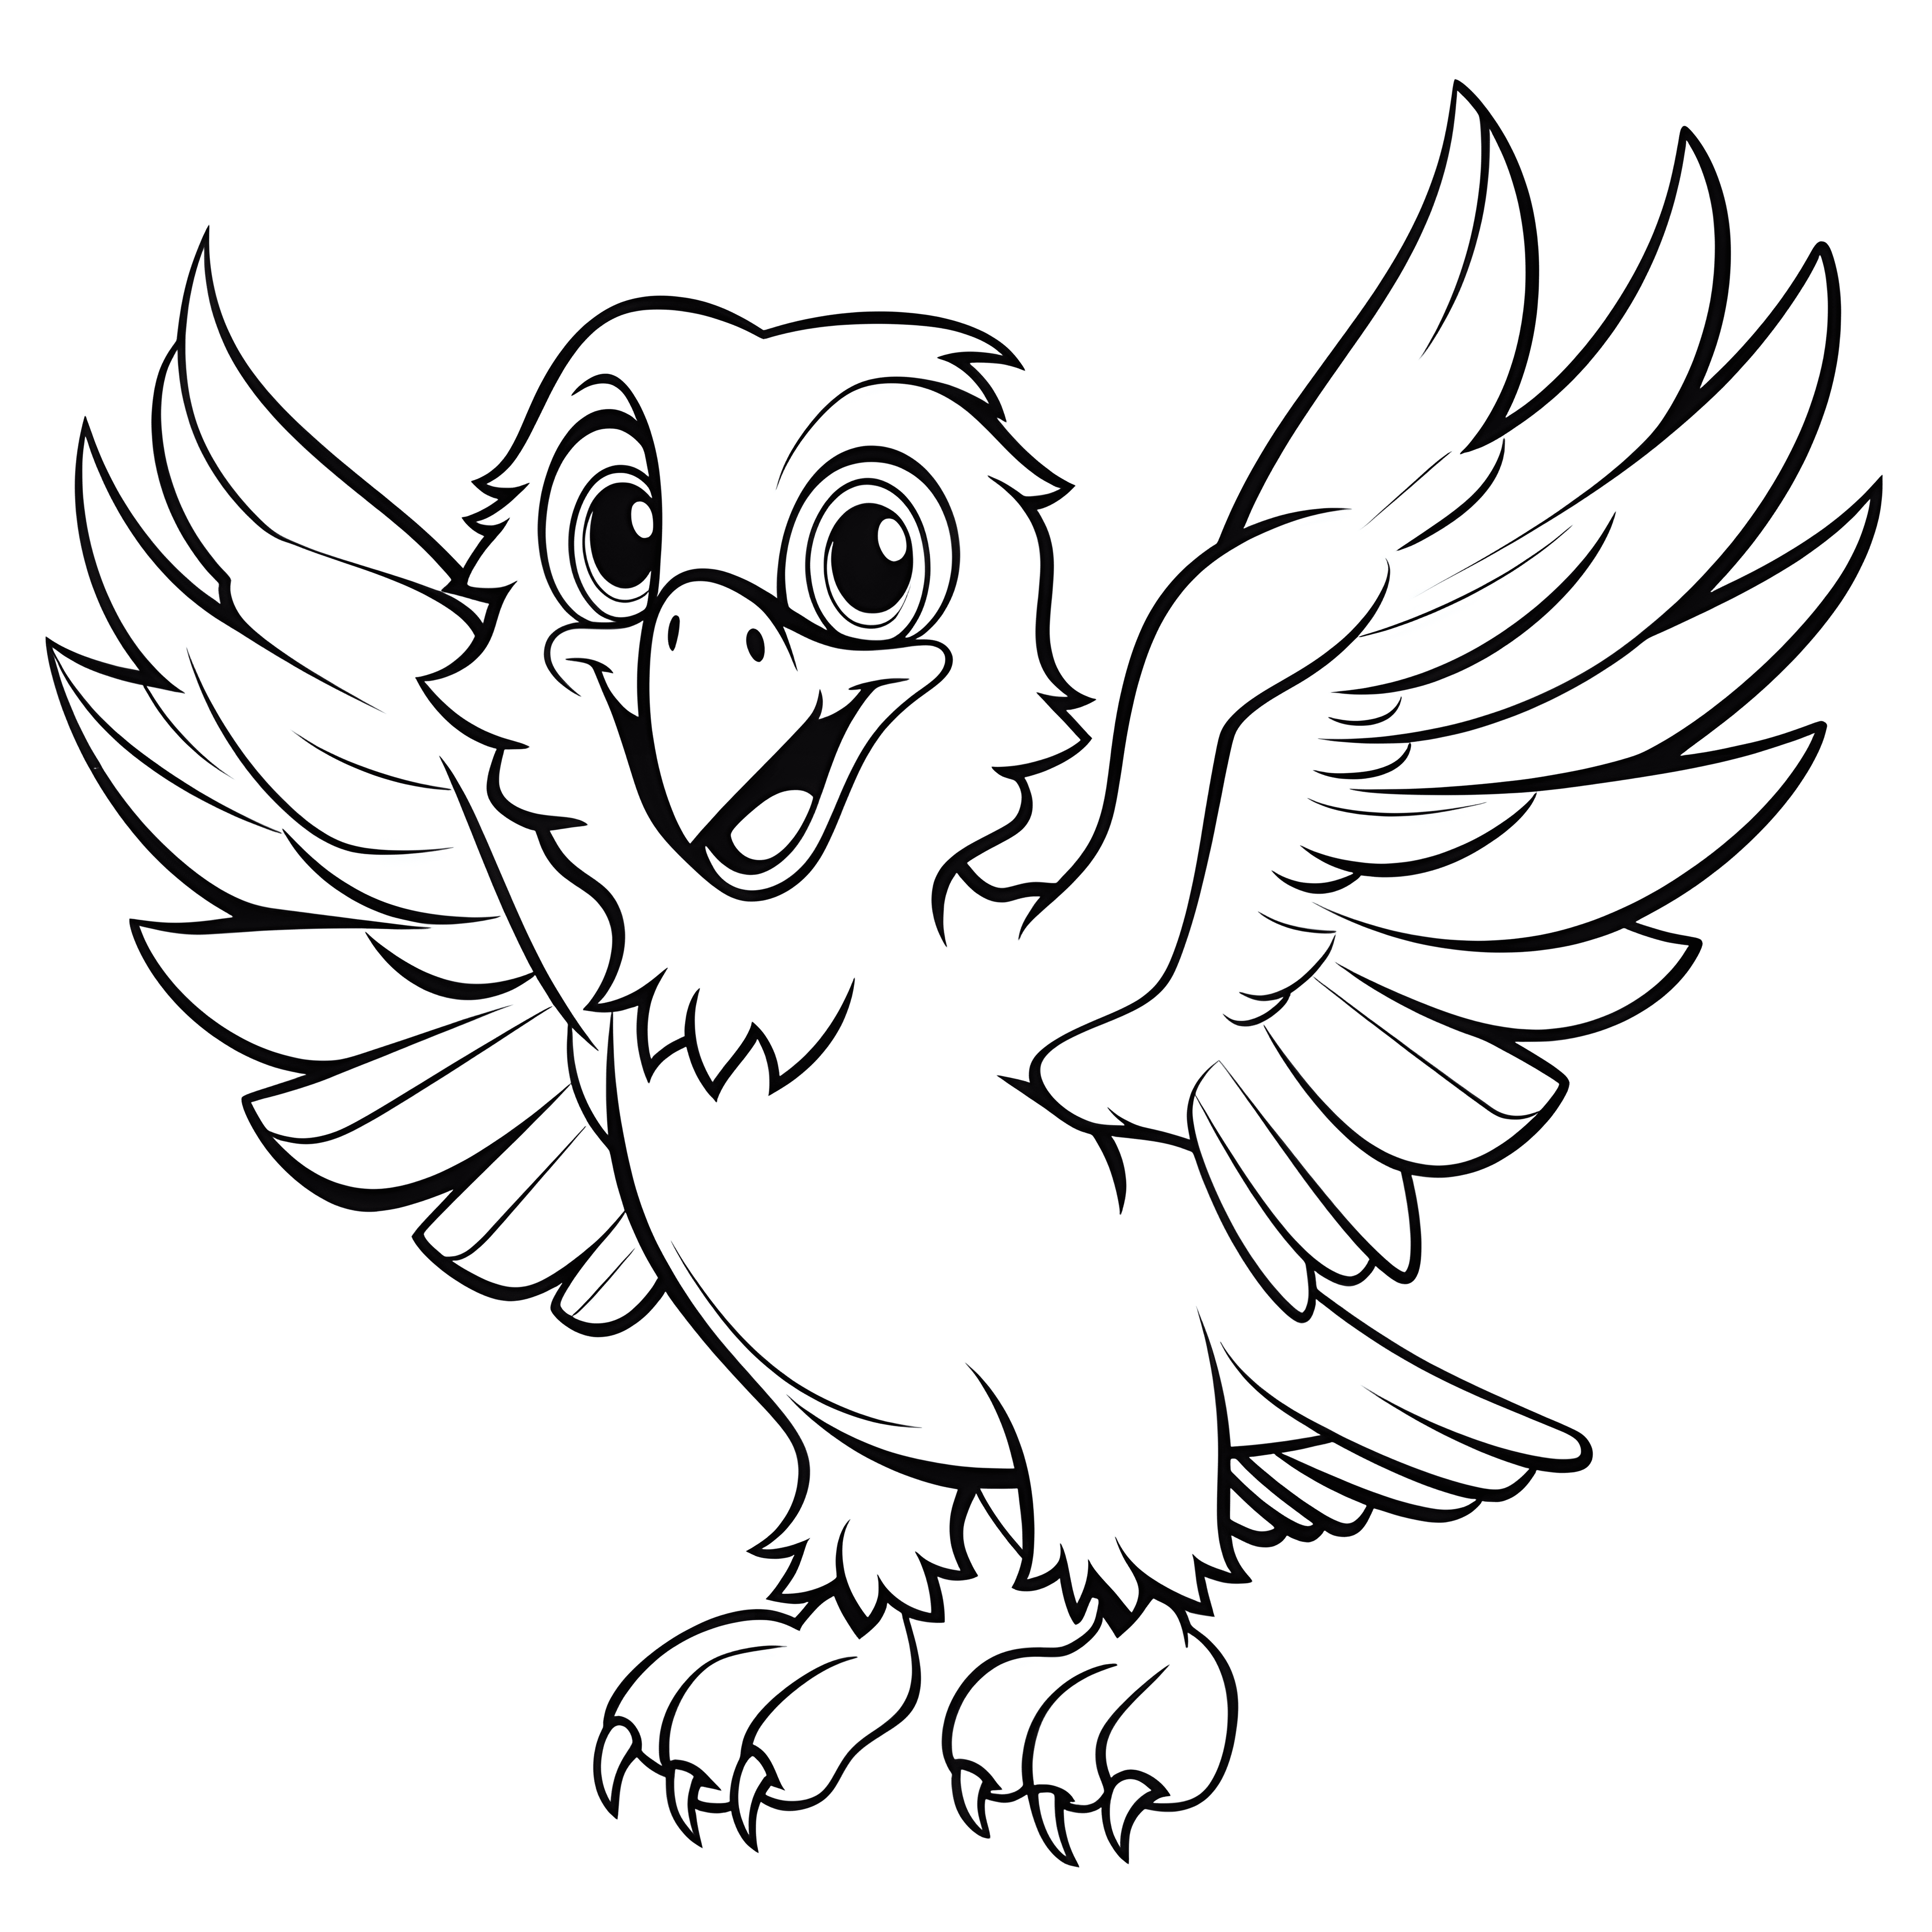 Ein einfacher Cartoon eines fliegenden süßen Adlers